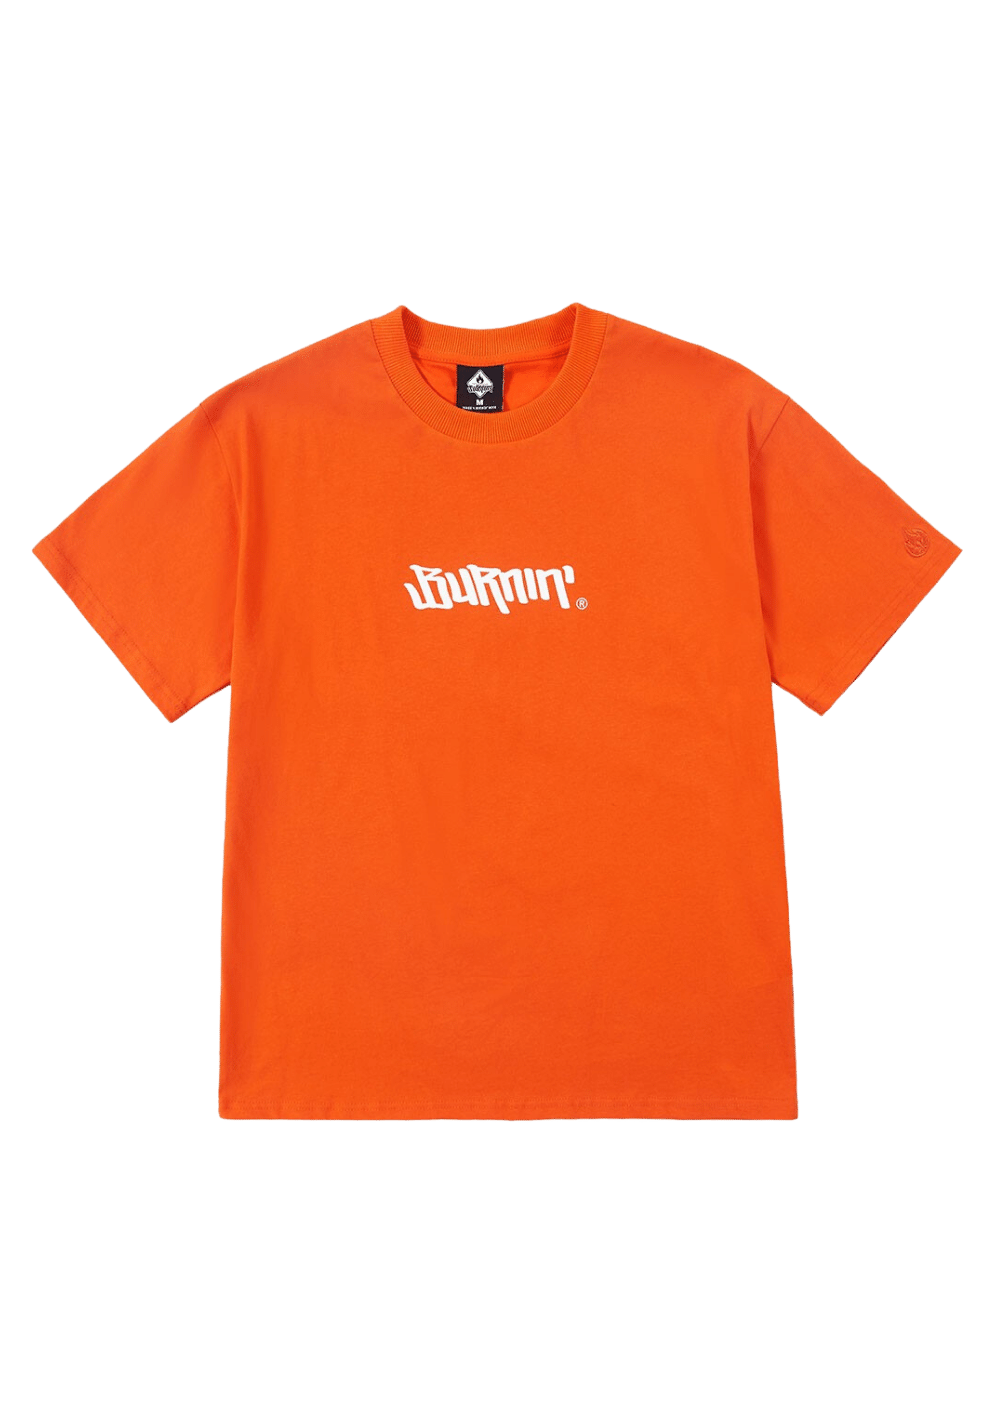 Horizontal Logo Oversized T-Shirt-Orange - PSYLOS 1, Horizontal Logo Oversized T-Shirt-Orange, T-Shirt, Burnin, PSYLOS 1